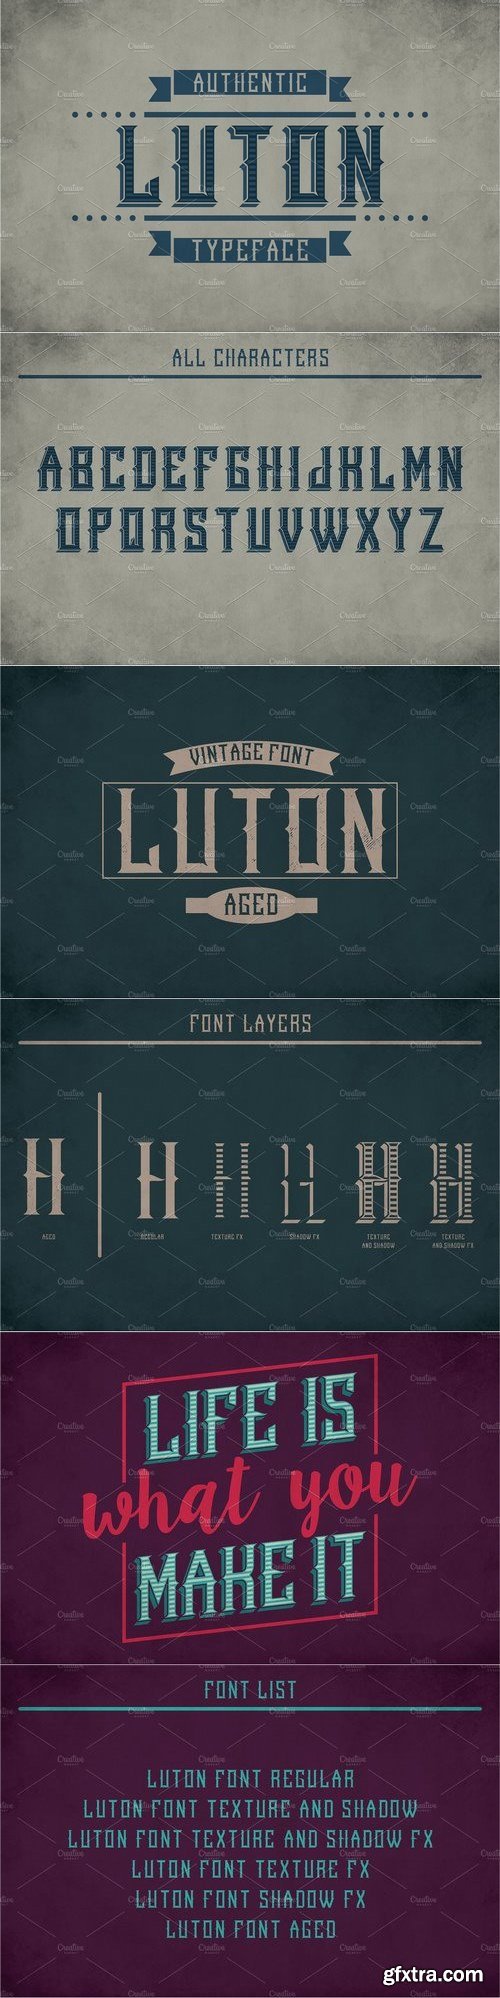 CM - Luton Vintage Label Typeface 1812005